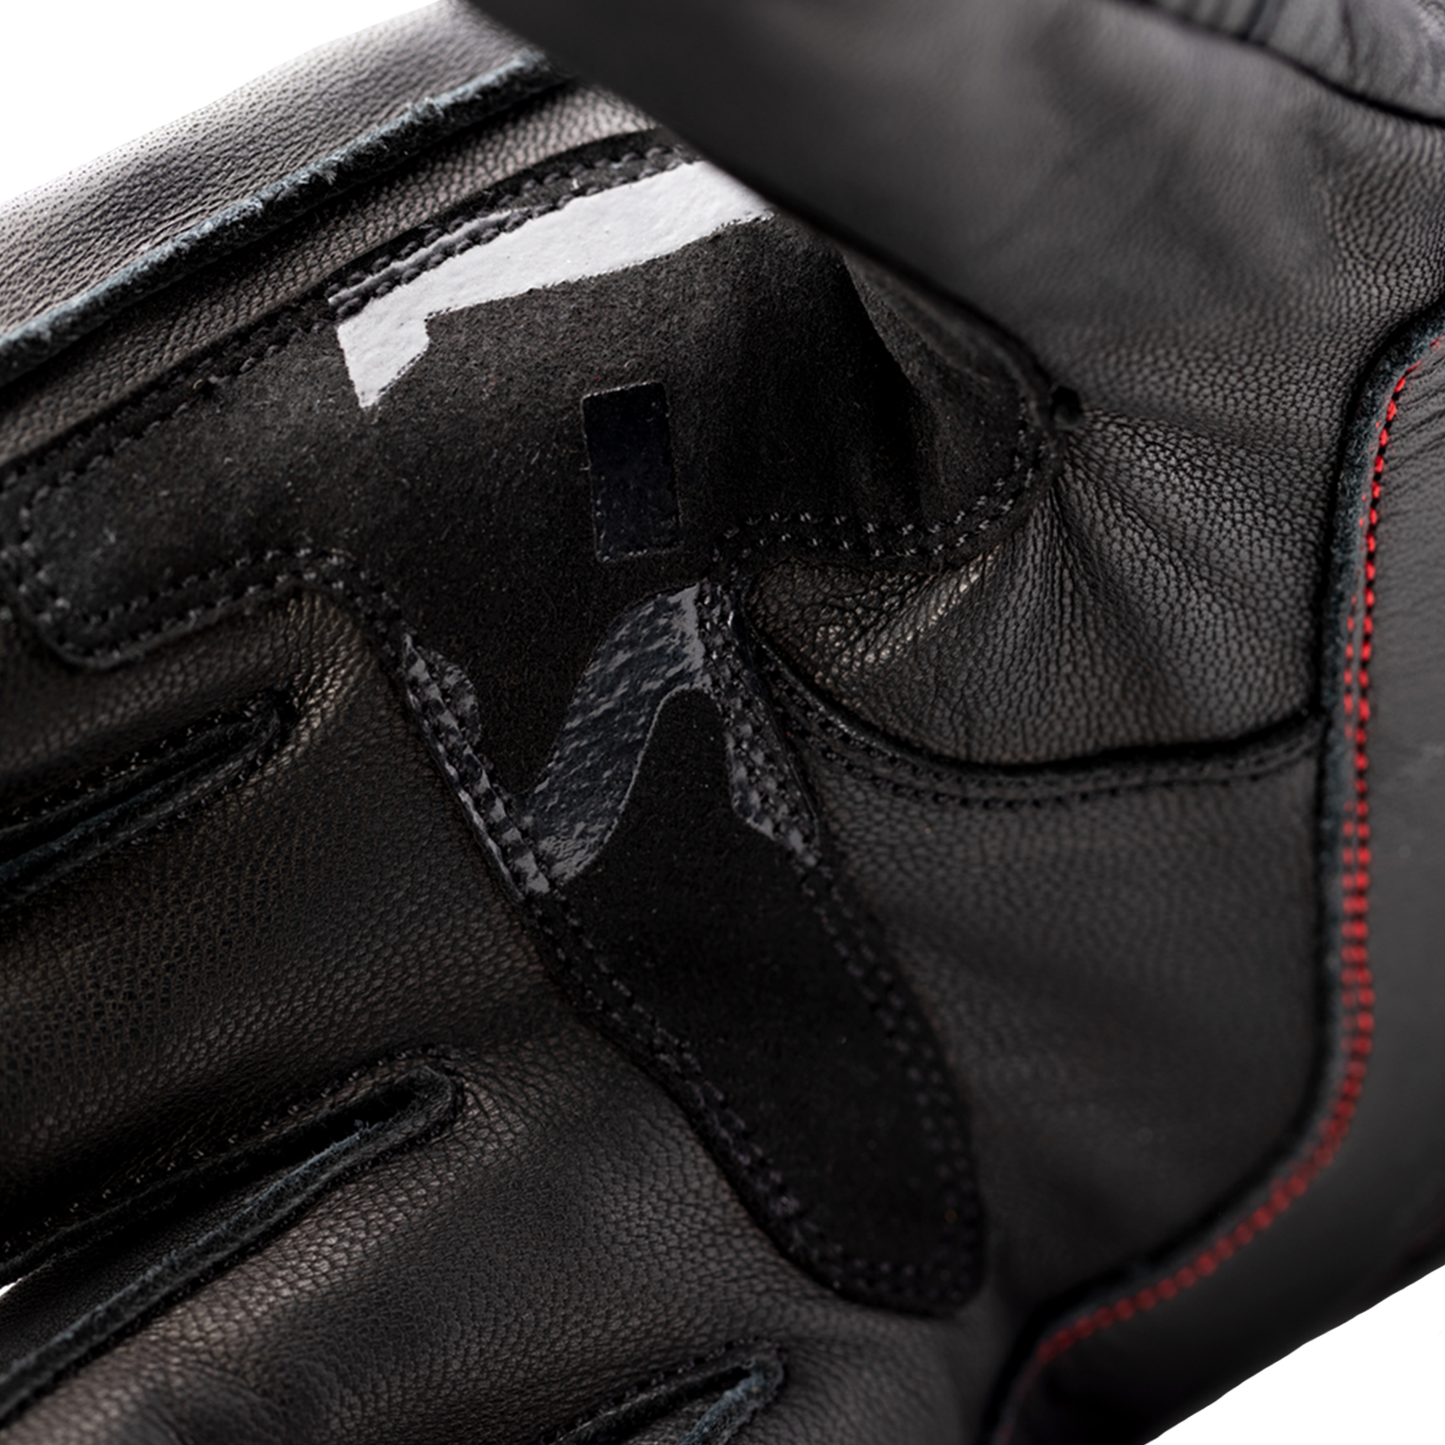 RST S1 CE Men's Gloves - Black/Grey/Red (3033)